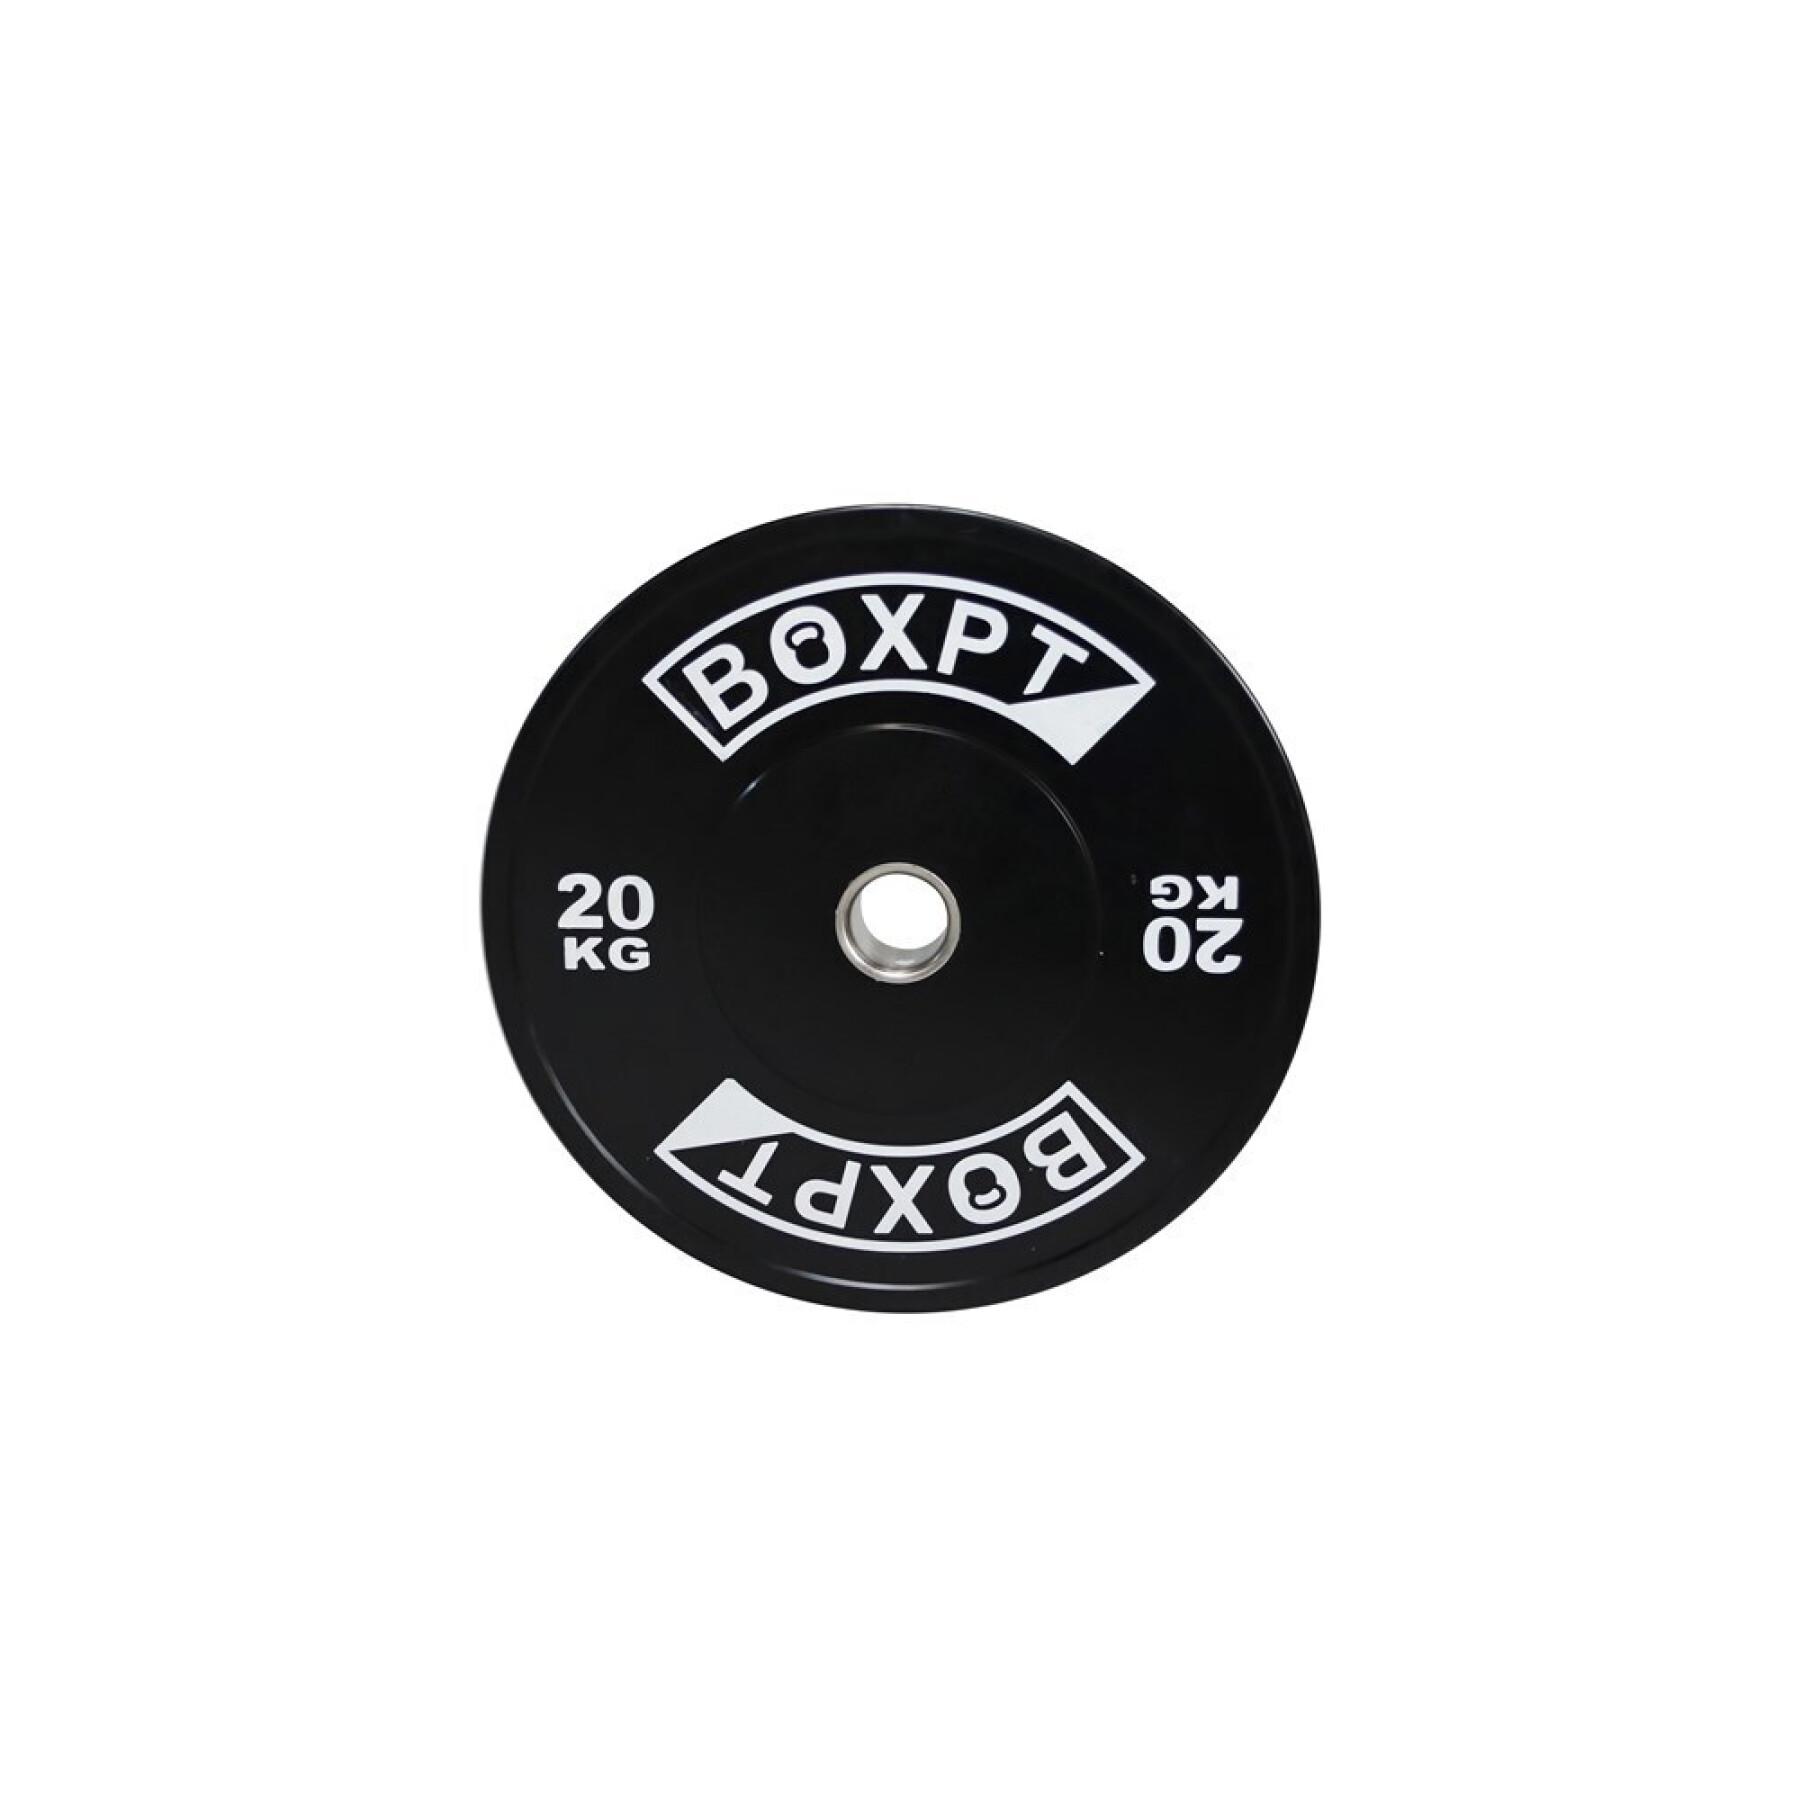 Disco de musculação Boxpt 2.0 - 20 kg